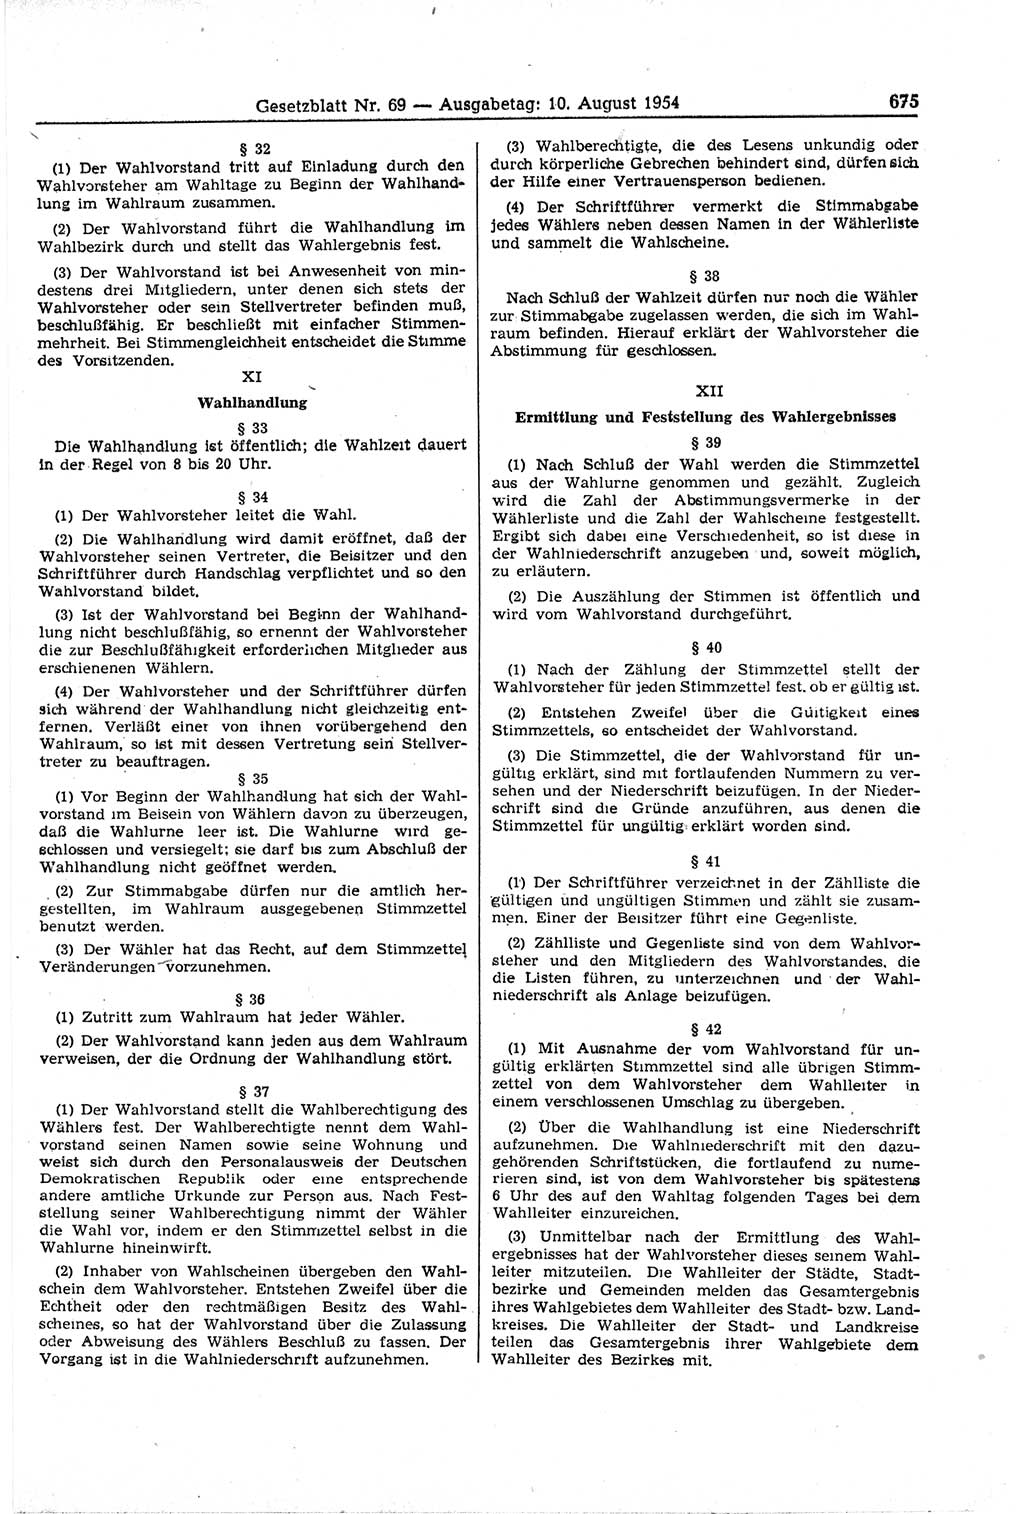 Gesetzblatt (GBl.) der Deutschen Demokratischen Republik (DDR) 1954, Seite 675 (GBl. DDR 1954, S. 675)